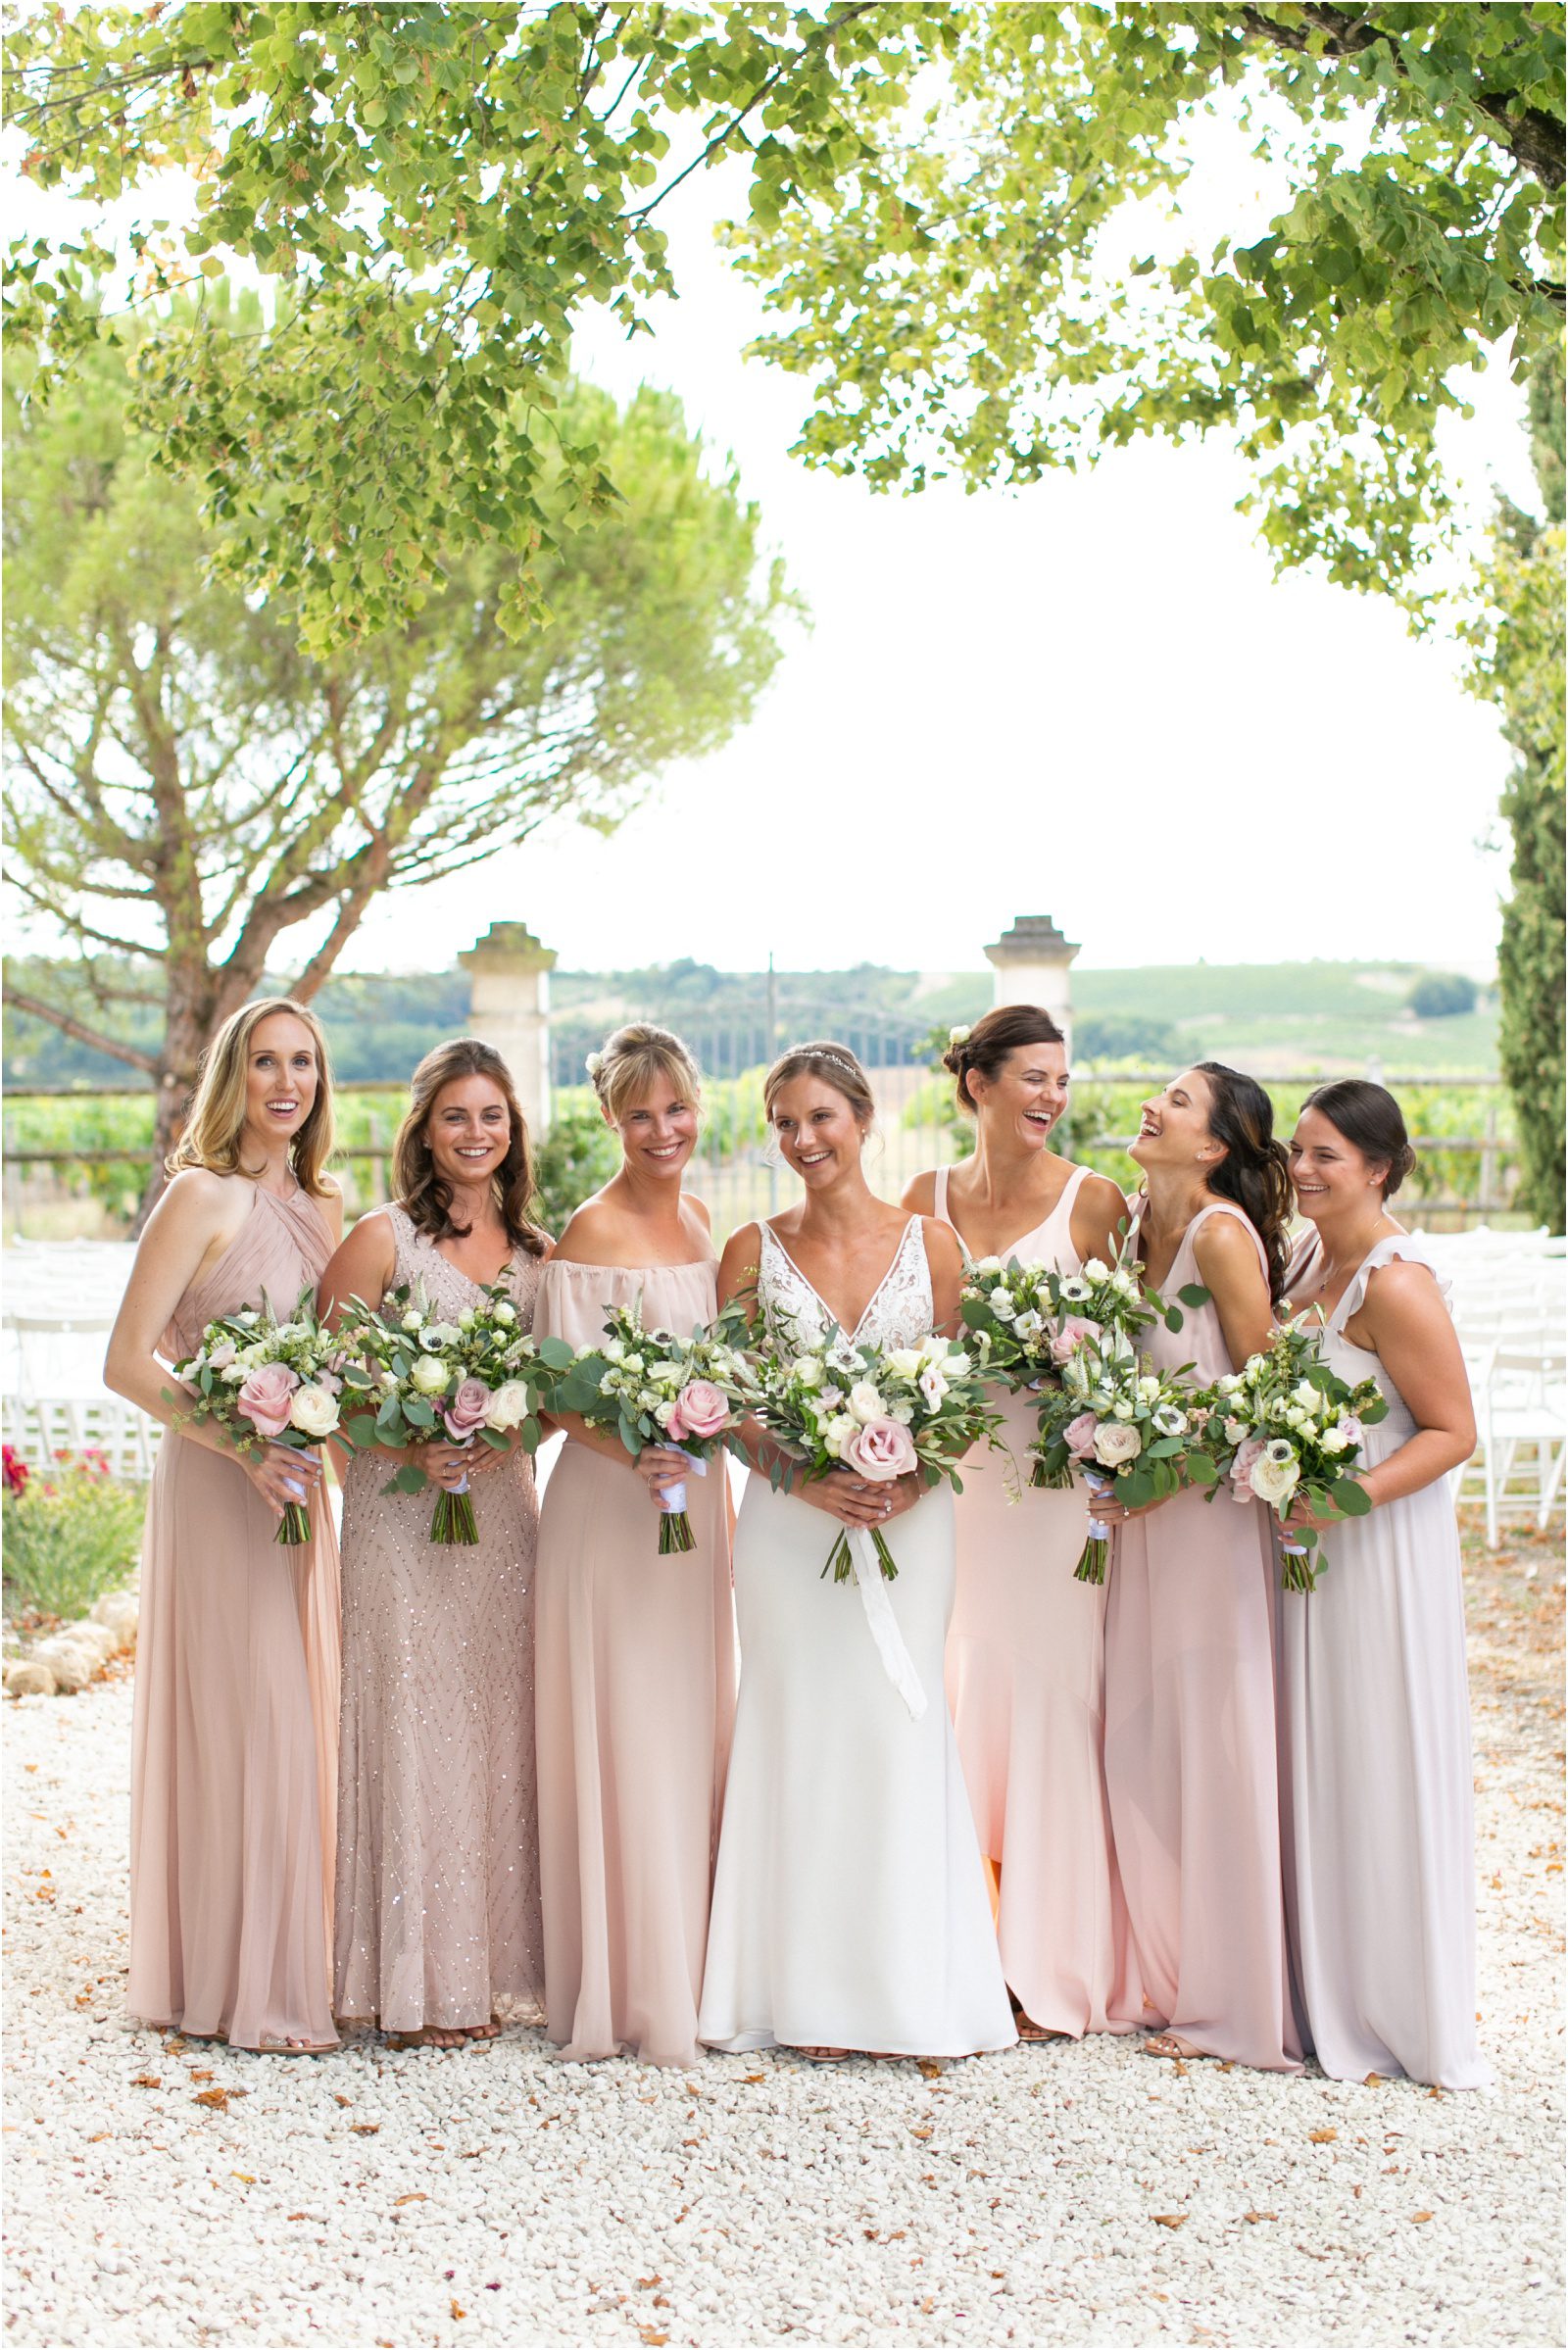 American bride and bridesmaids at La Vue France